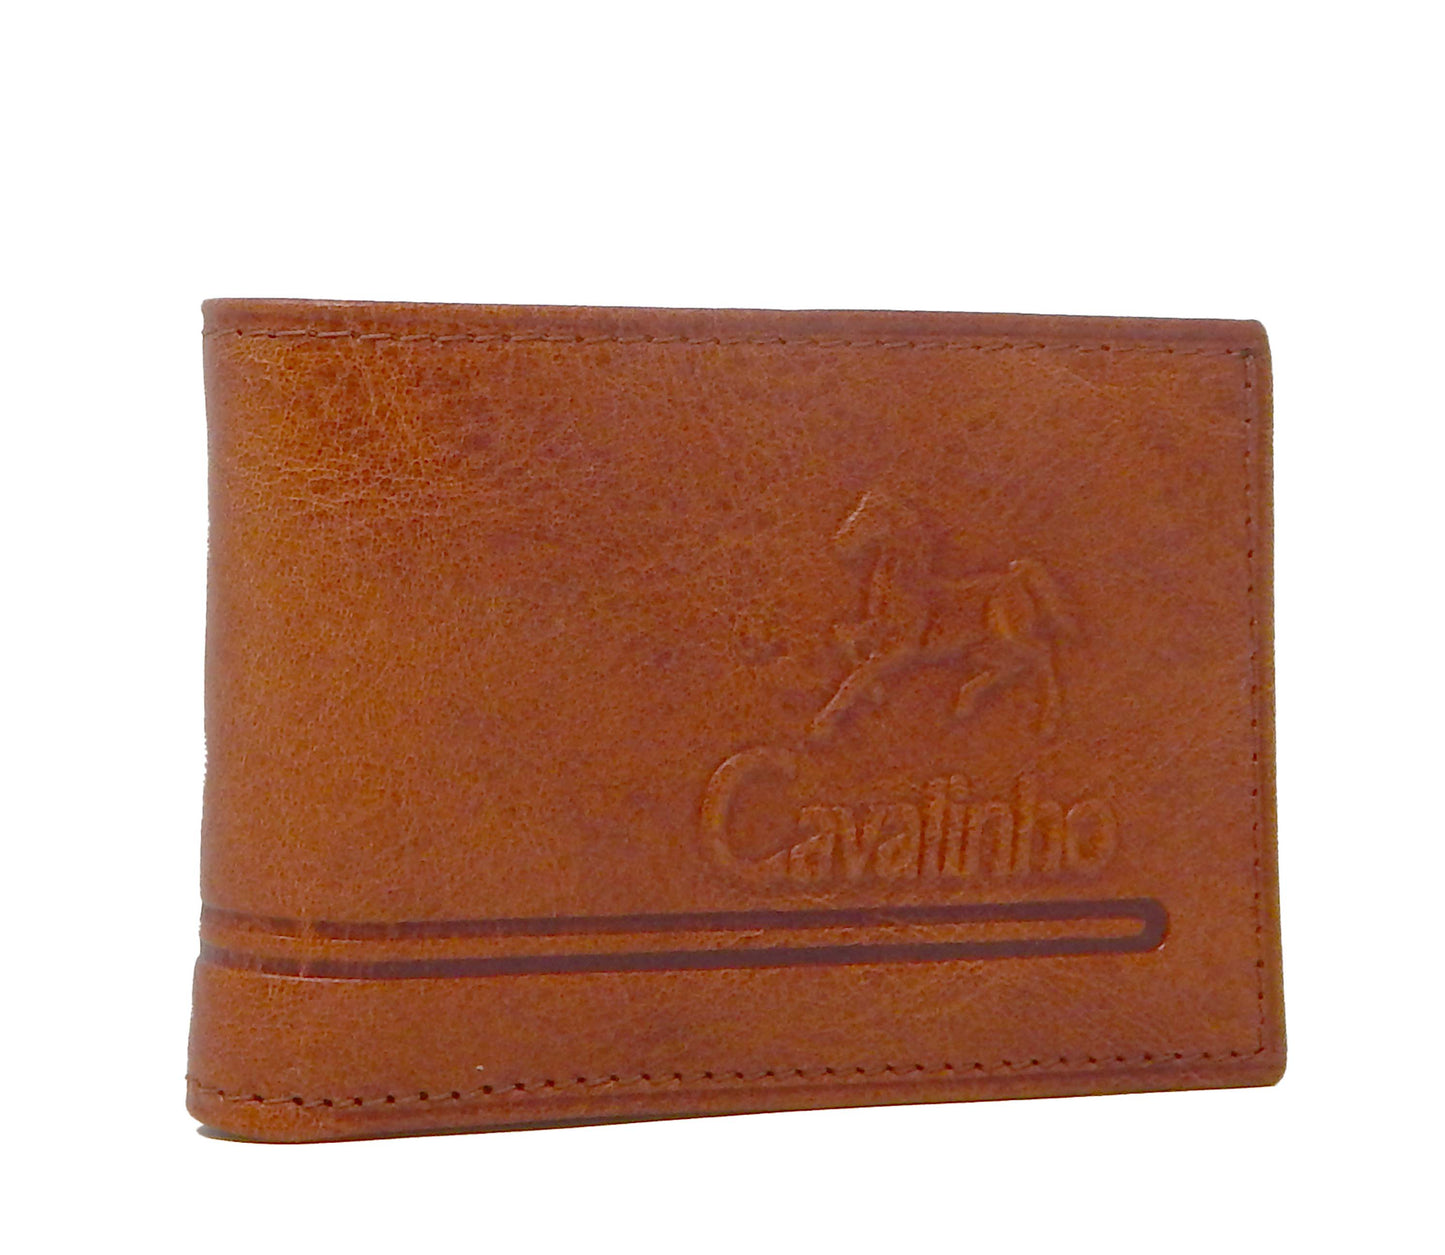 Cavalinho Men's Bifold Leather Wallet - SaddleBrown - 28610585.13.99_2